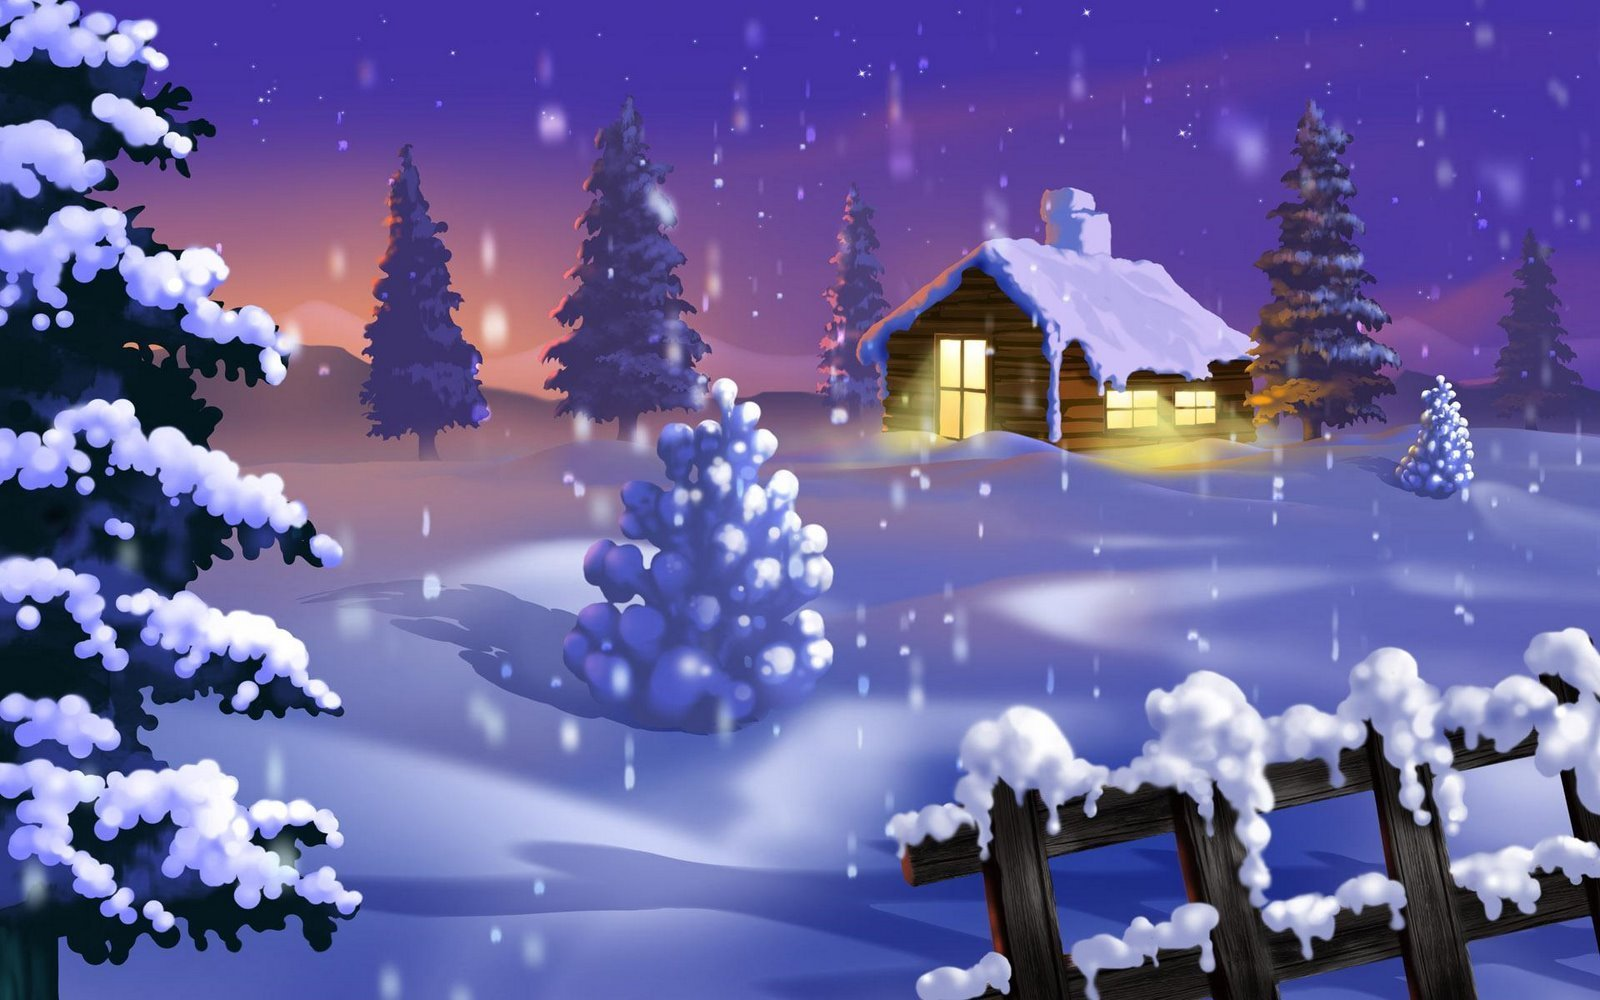 navidad live wallpaper,invierno,árbol de navidad,árbol,nochebuena,nieve